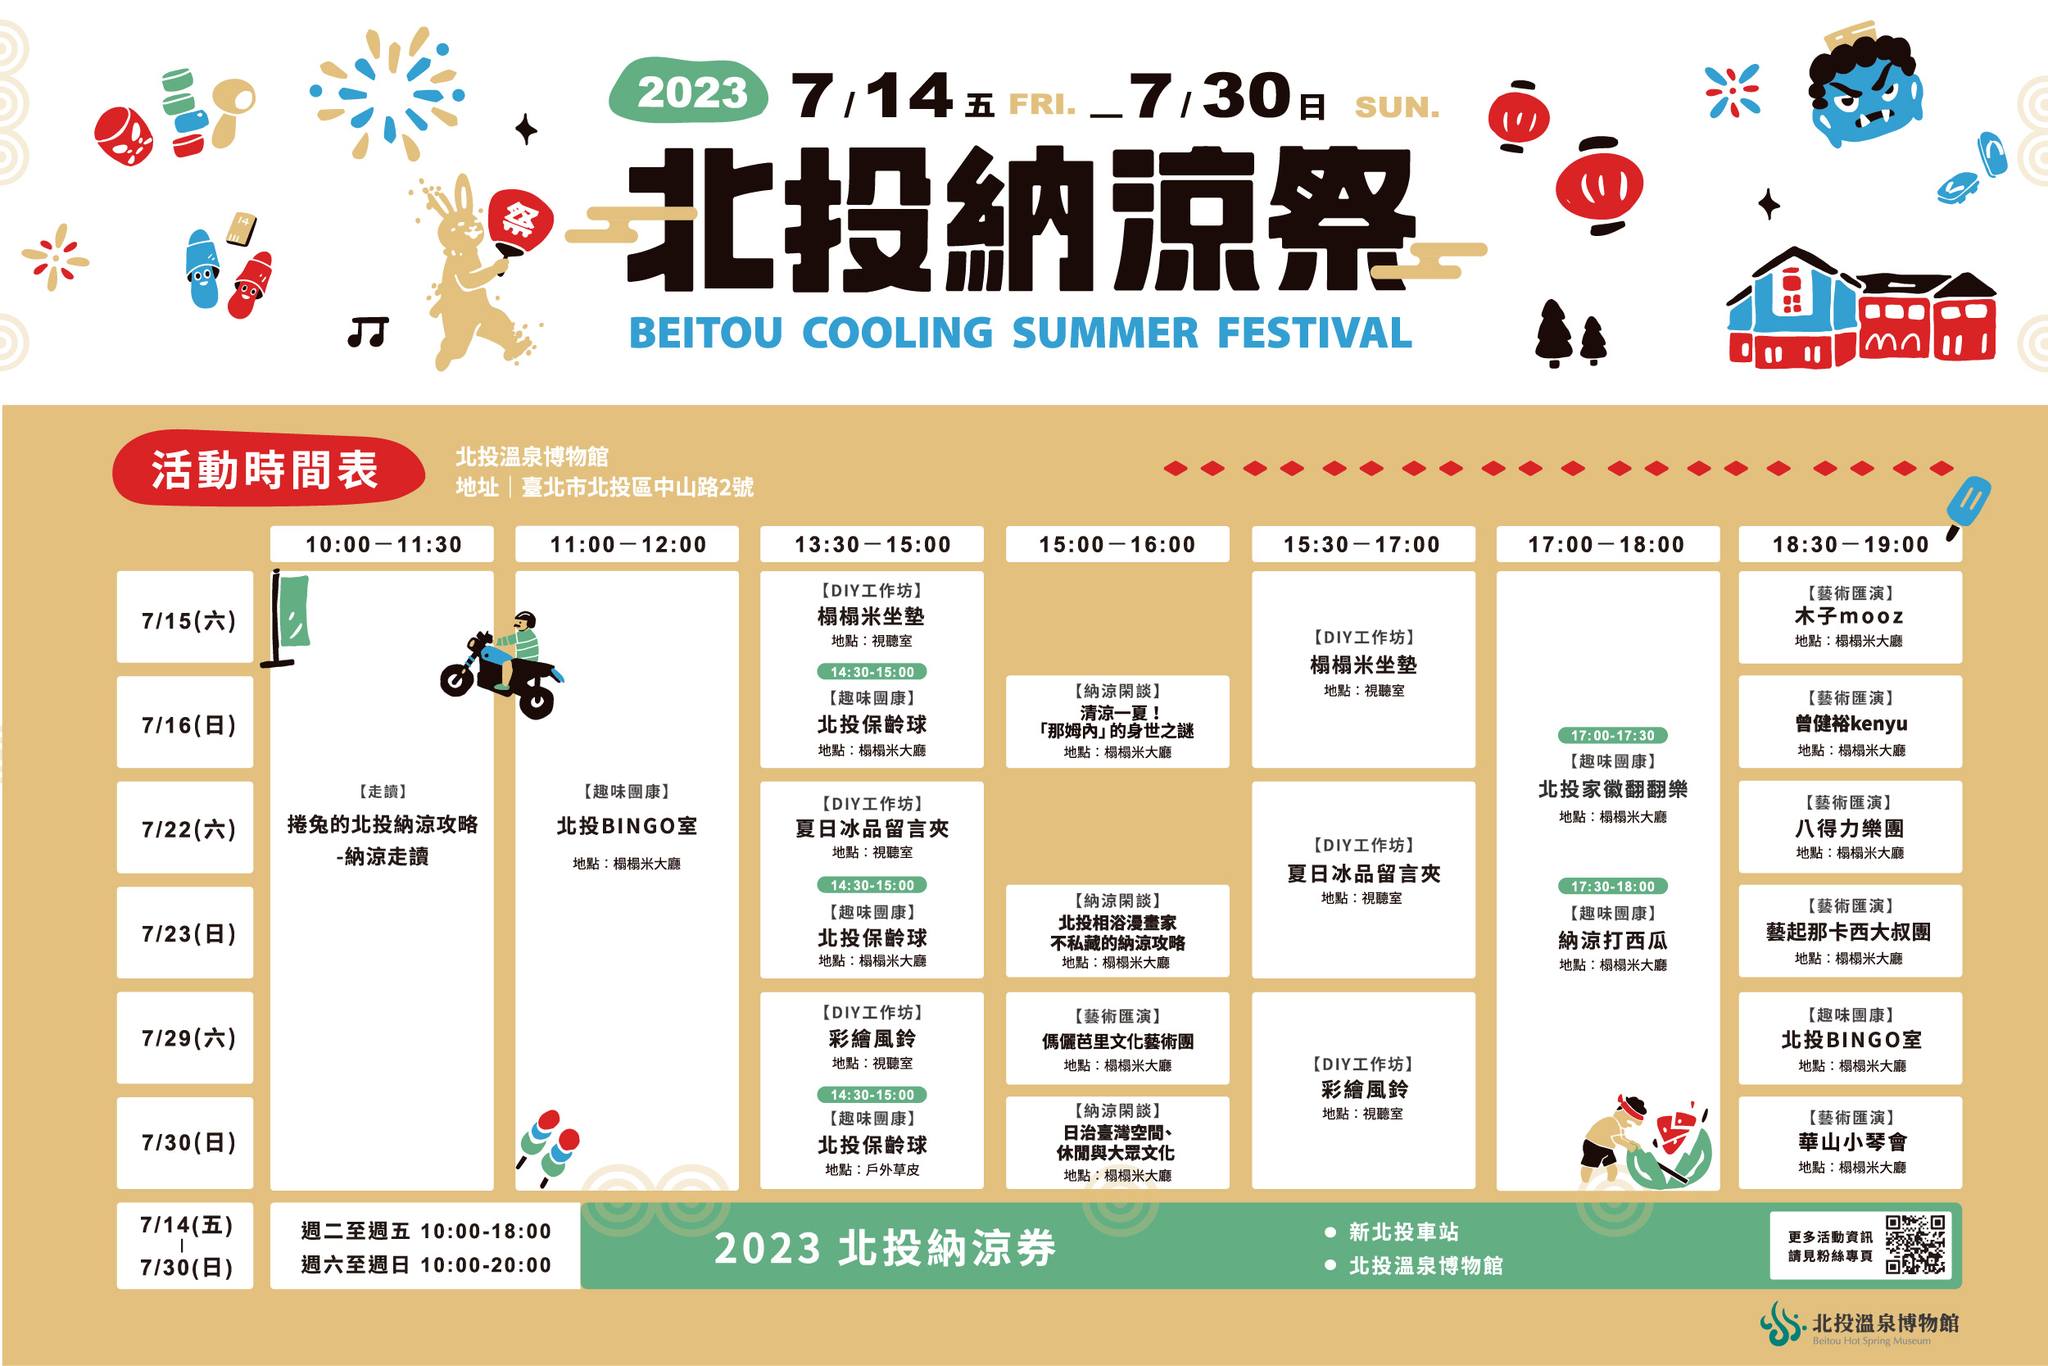 台北「2023北投納涼祭」為期17天的北投走讀、DIY活動、打西瓜比賽